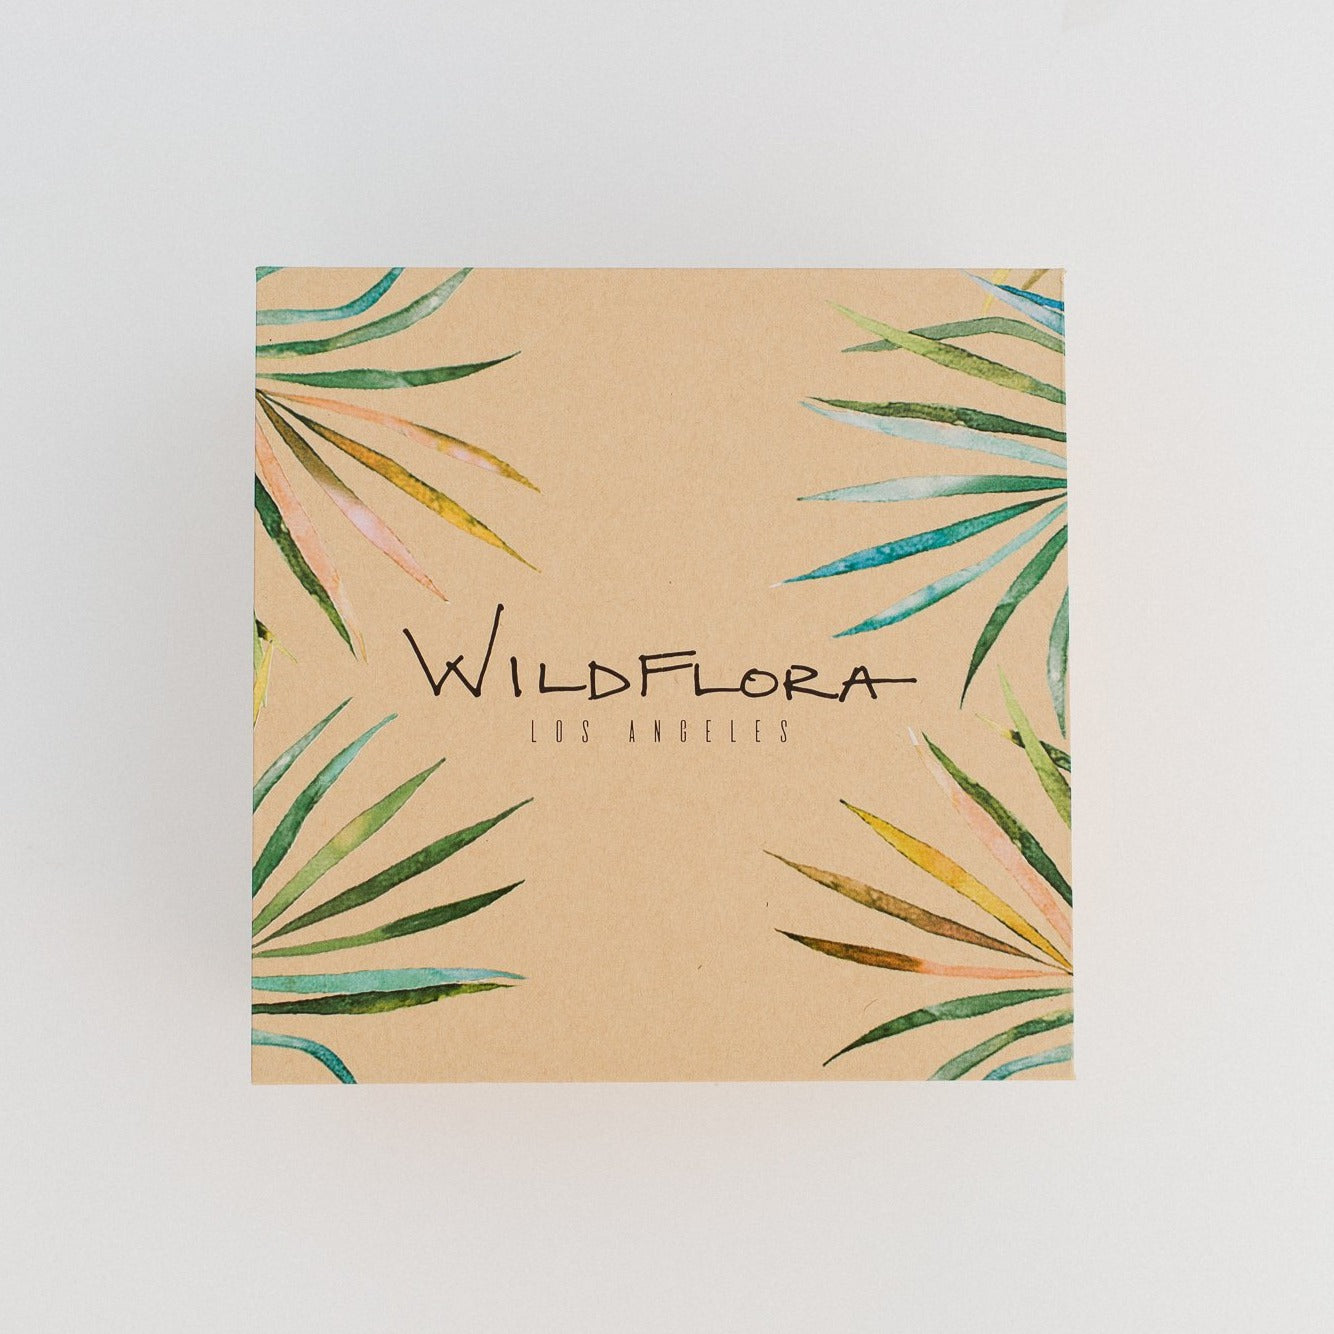 WildFlora Magnetic Closure Box À la Carte